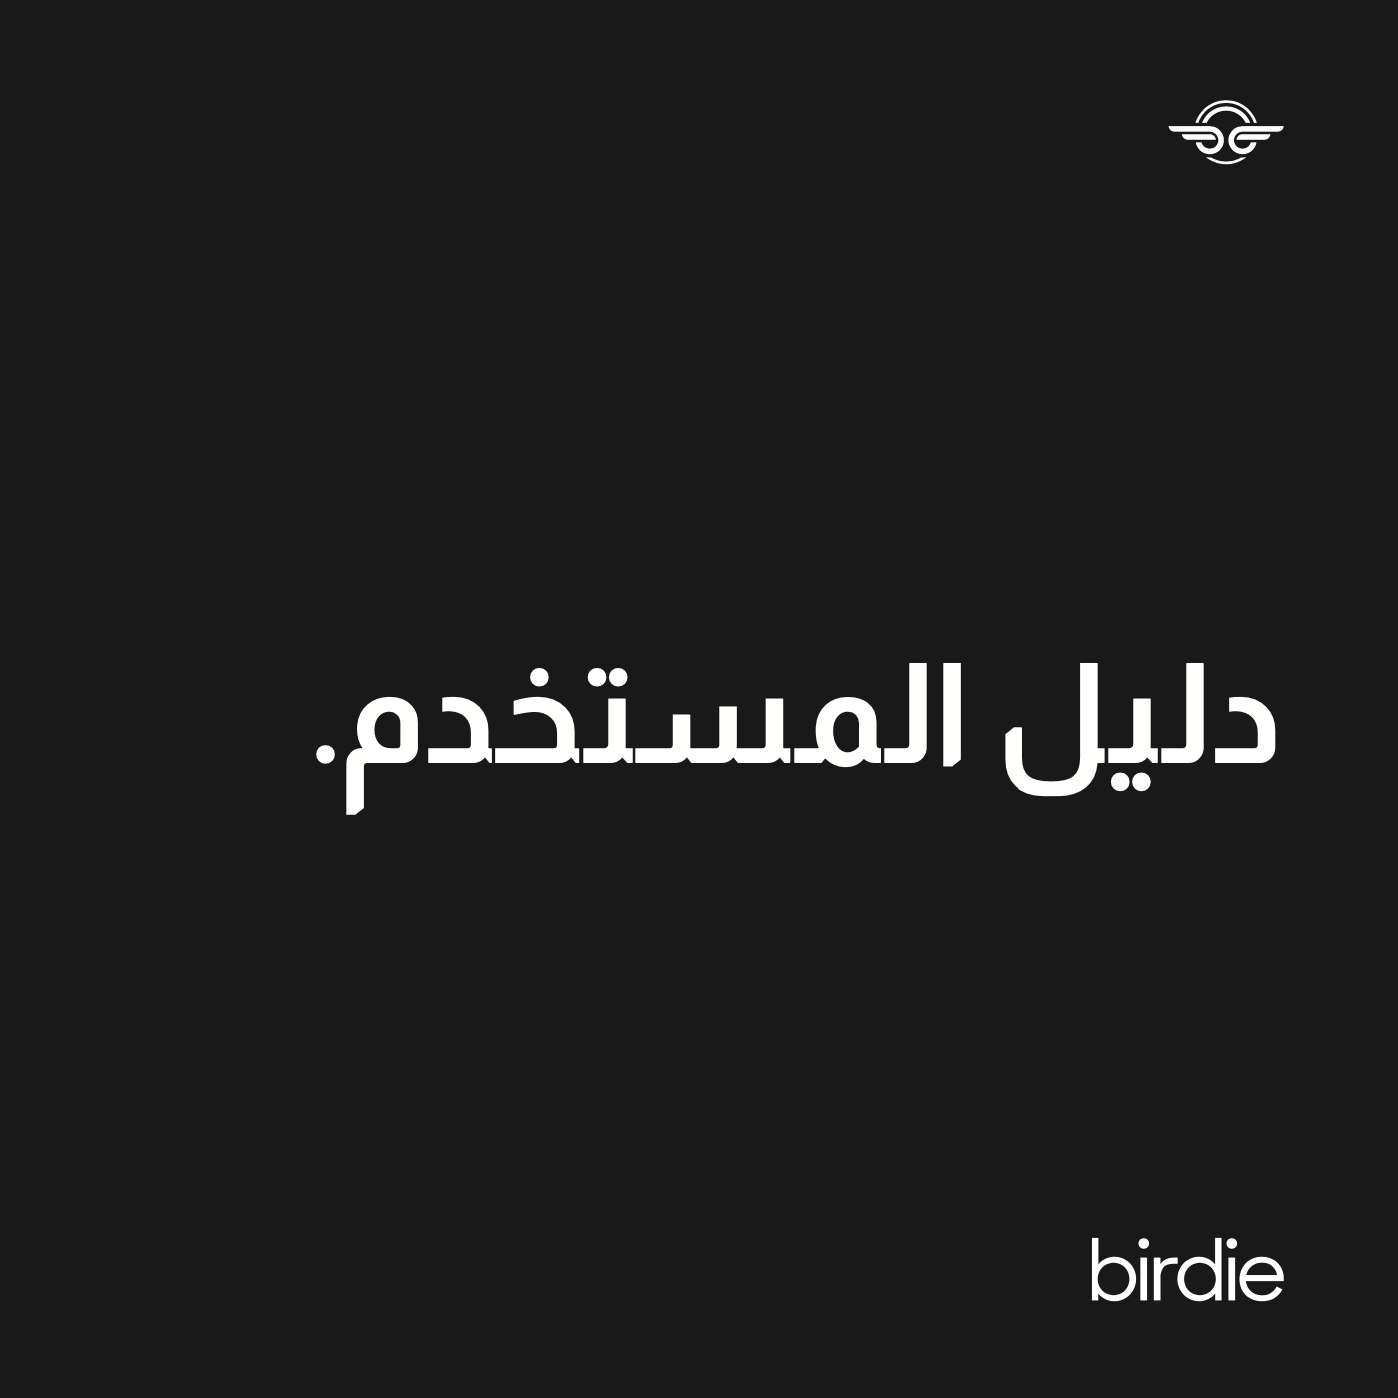 Birdie_Cover_-_Arabic.png